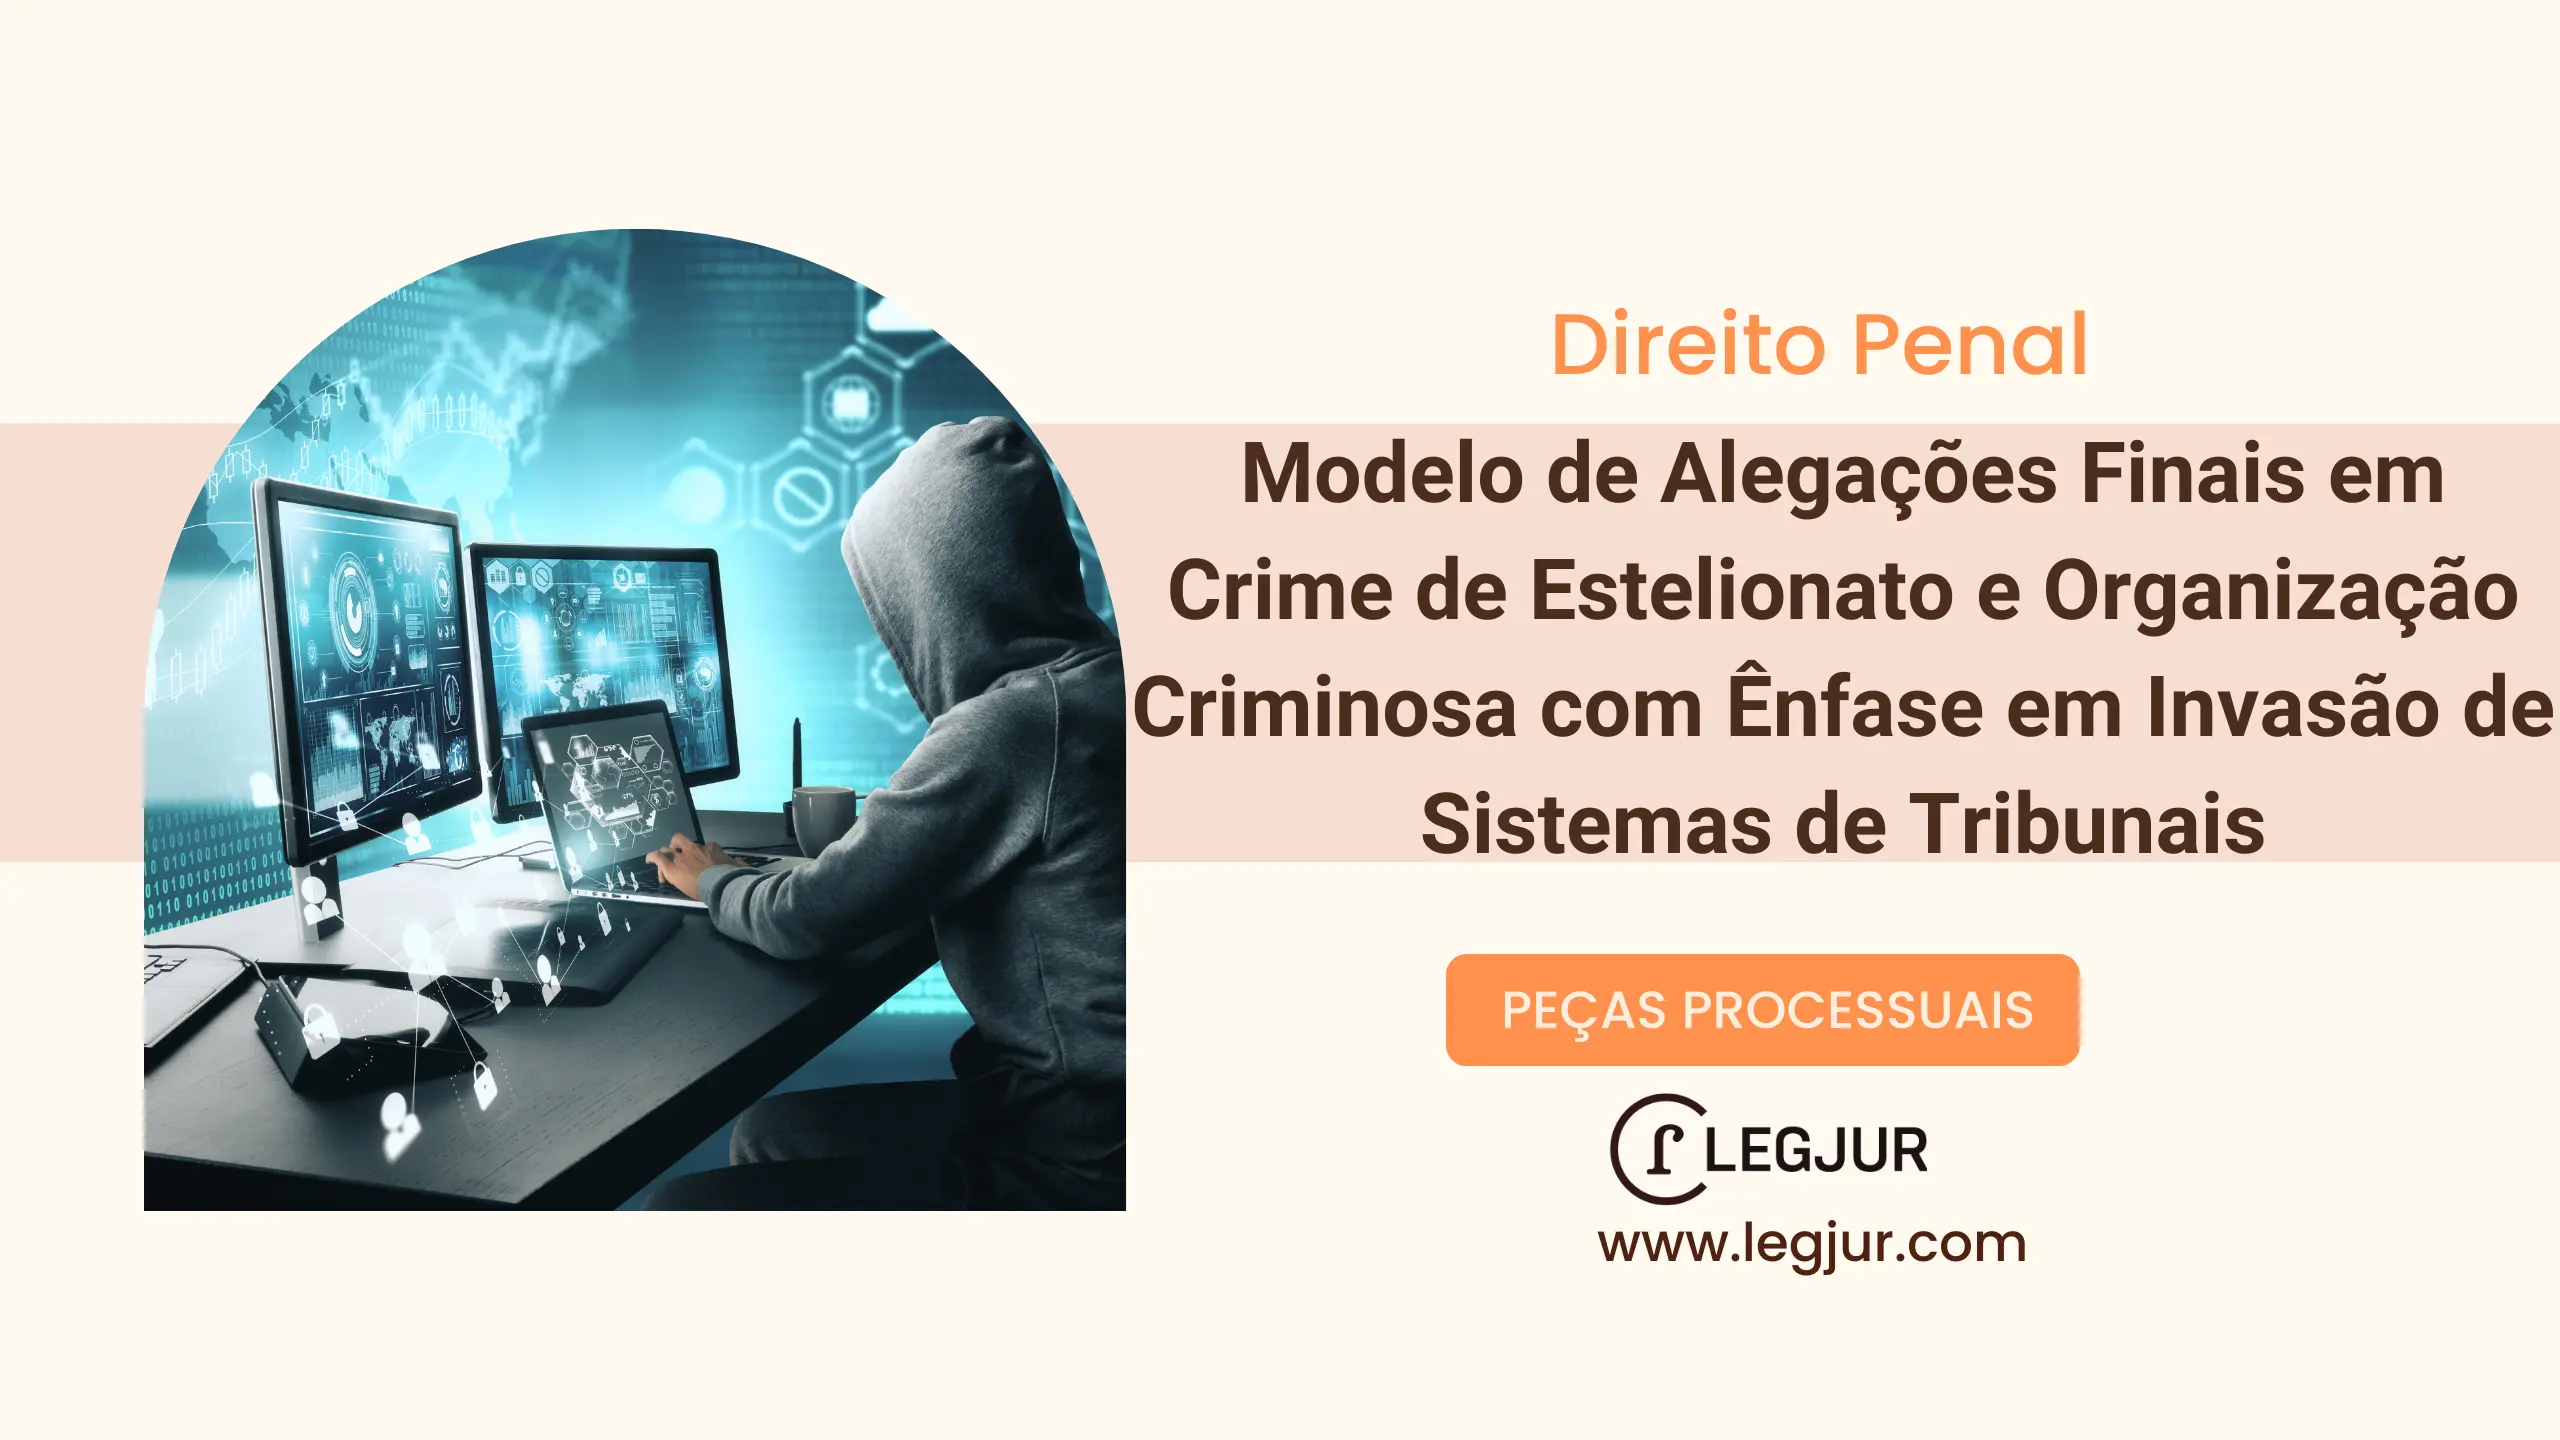 Modelo de Alegações Finais em Crime de Estelionato e Organização Criminosa com Ênfase em Invasão de Sistemas de Tribunais